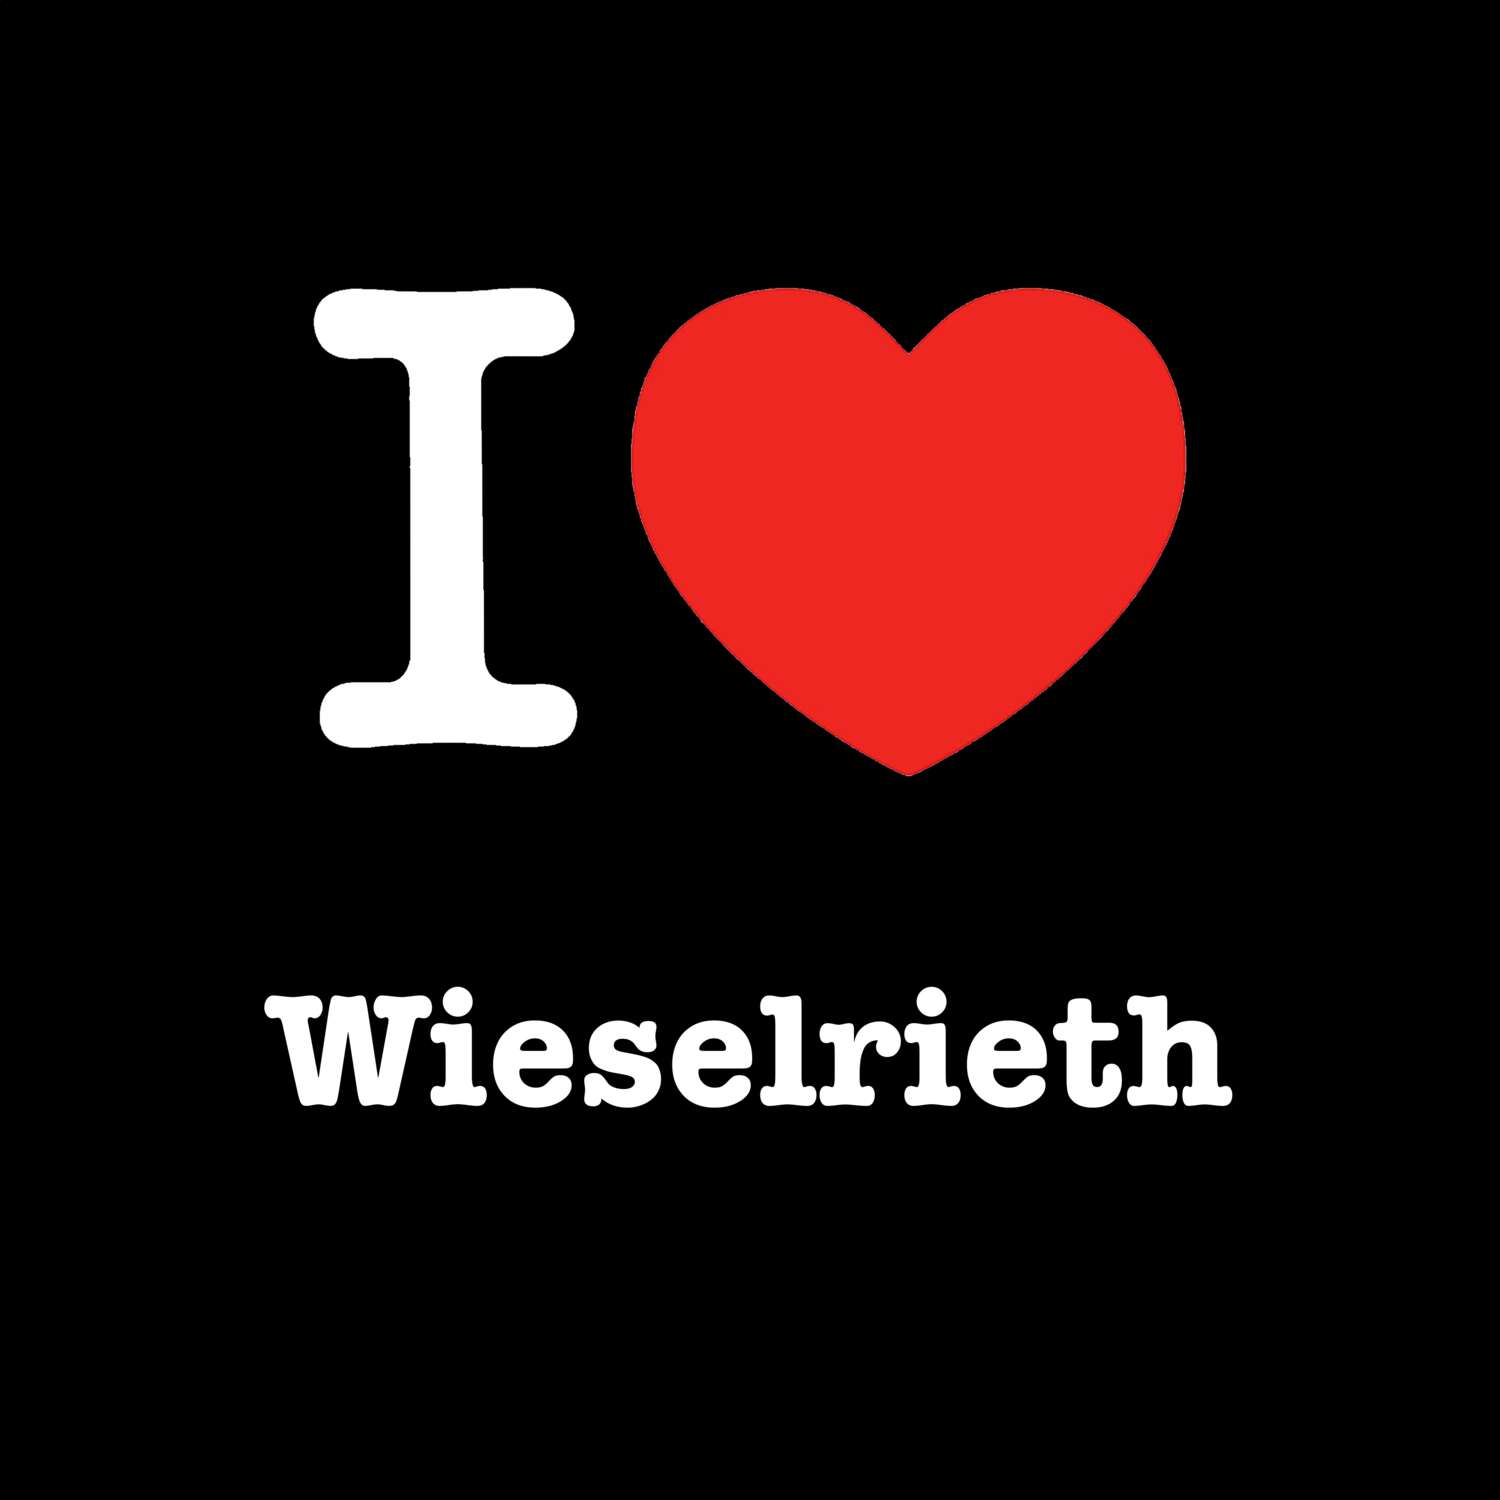 Wieselrieth T-Shirt »I love«